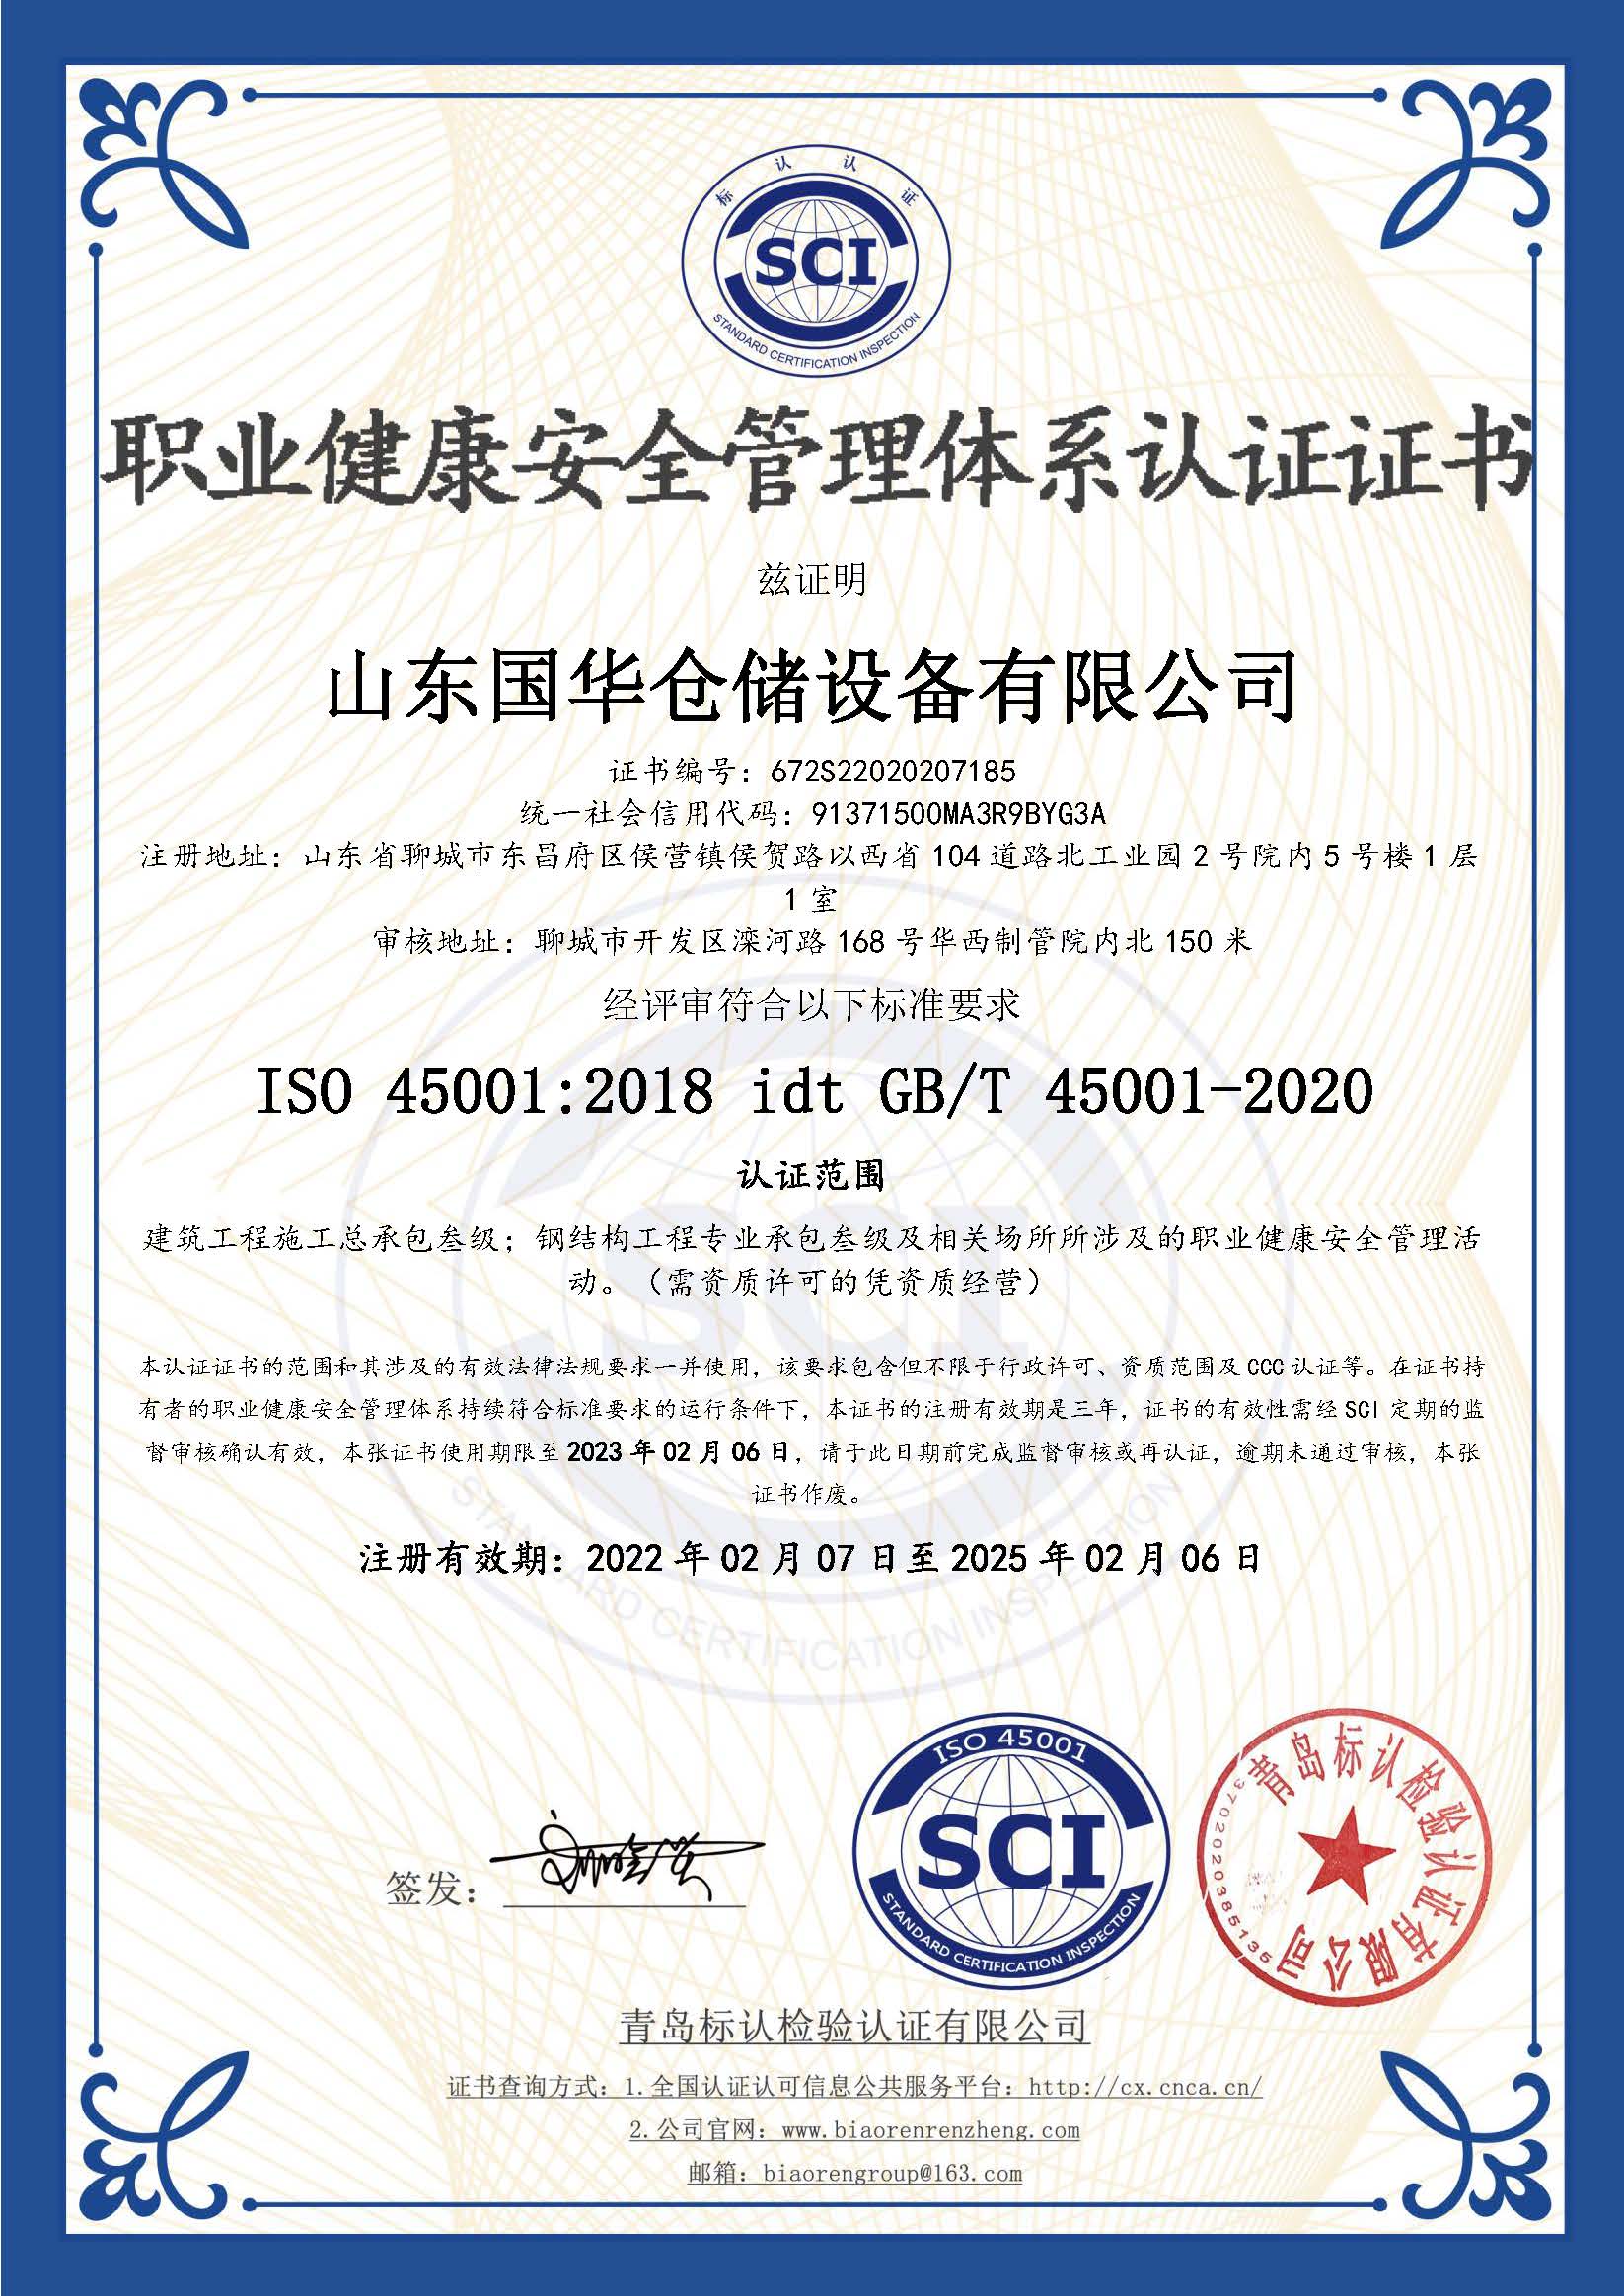 秦皇岛钢板仓职业健康安全管理体系认证证书